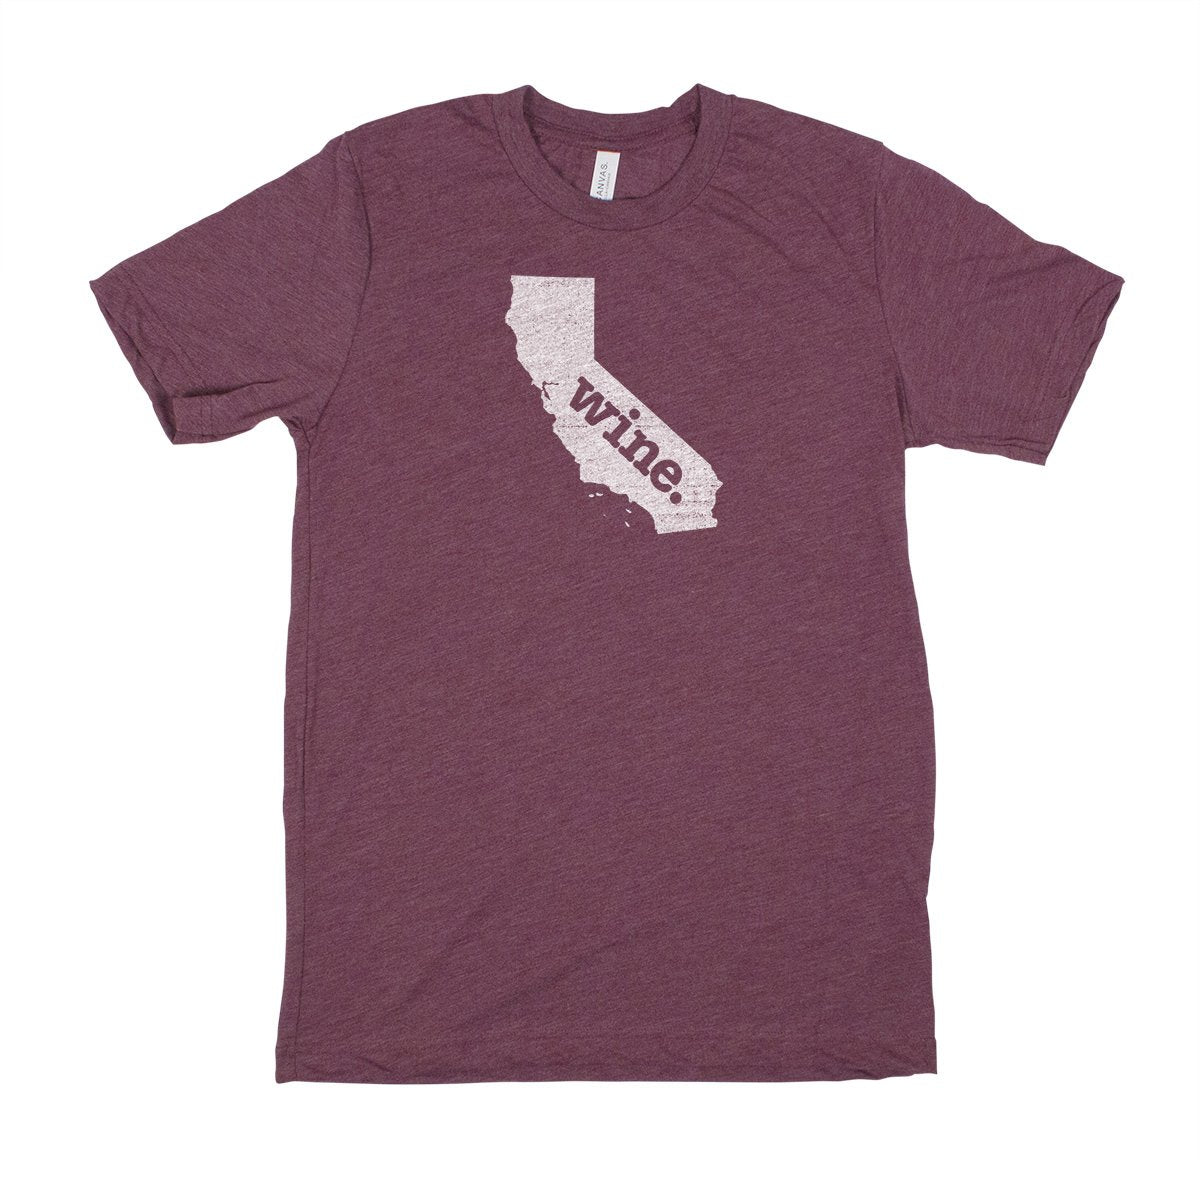 fish. Men's Unisex T-Shirt - Connecticut